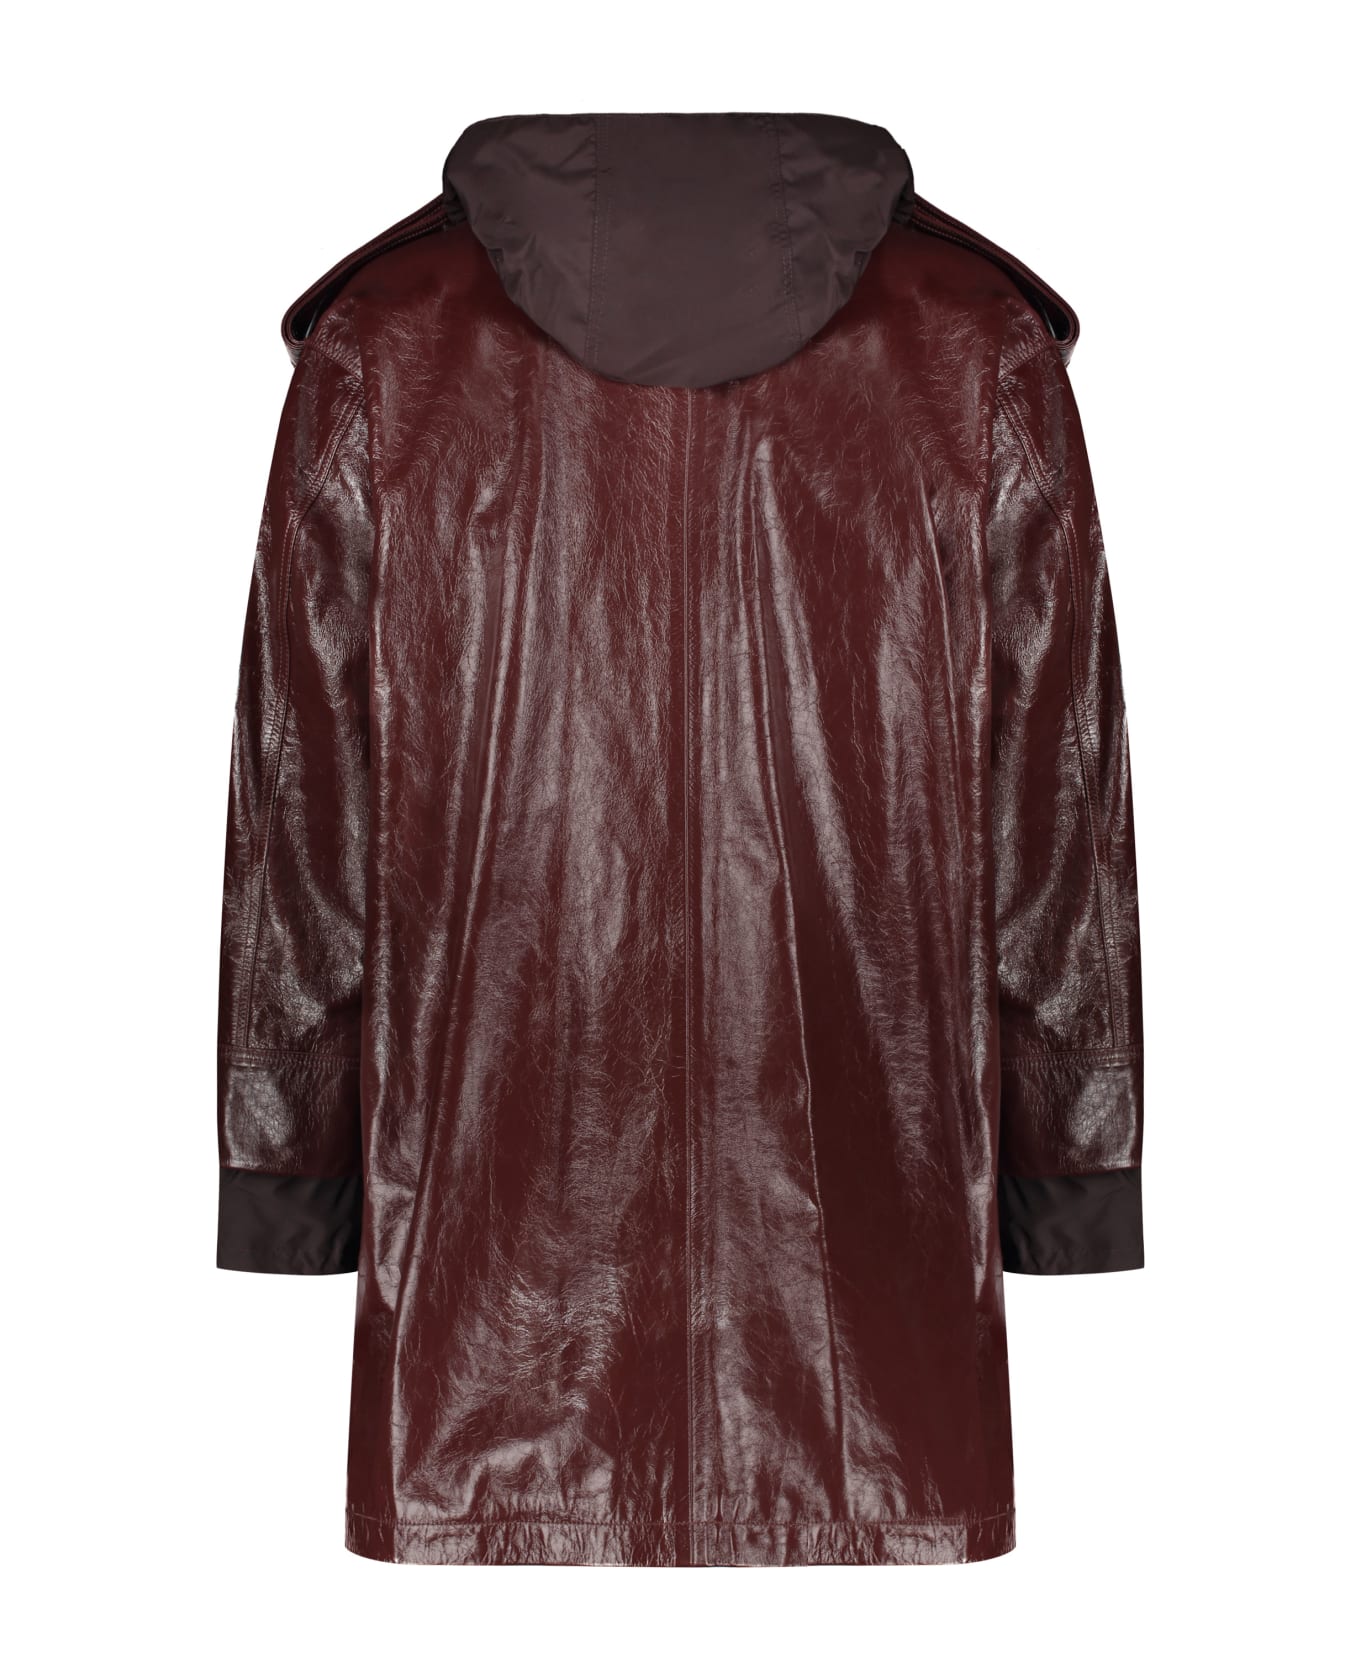 AMBUSH Hooded Leather Jacket - Burgundy